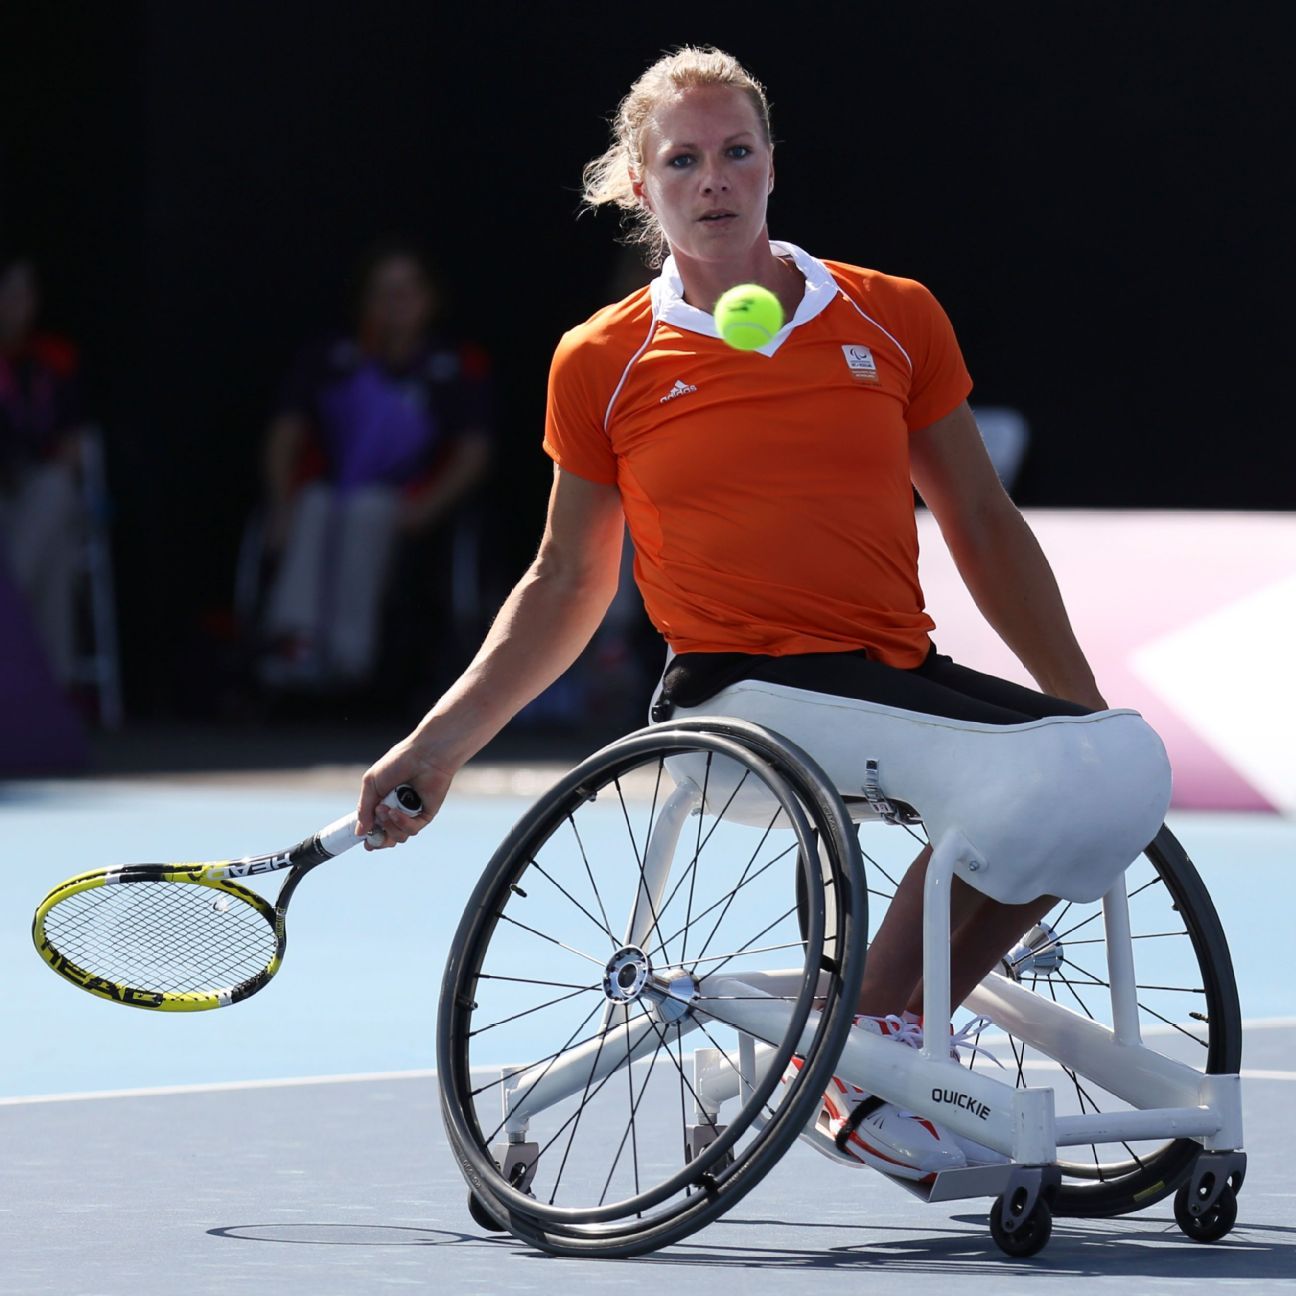 Wheelchair star among '23 Tennis HOF nominees